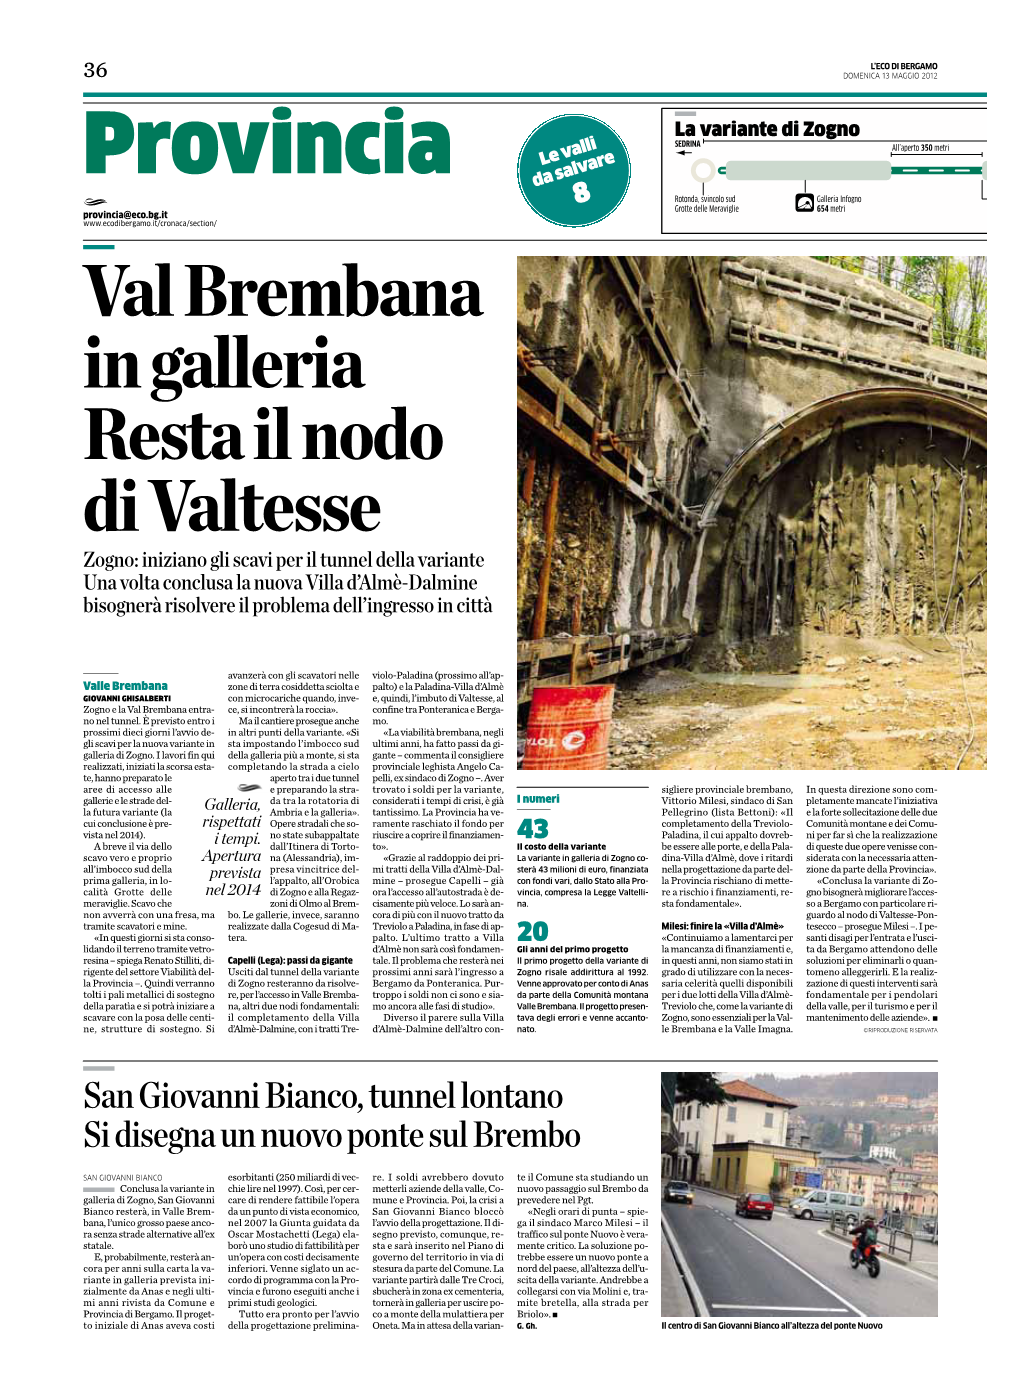 San Giovanni Bianco, Tunnel Lontano Si Disegna Un Nuovo Ponte Sul Brembo